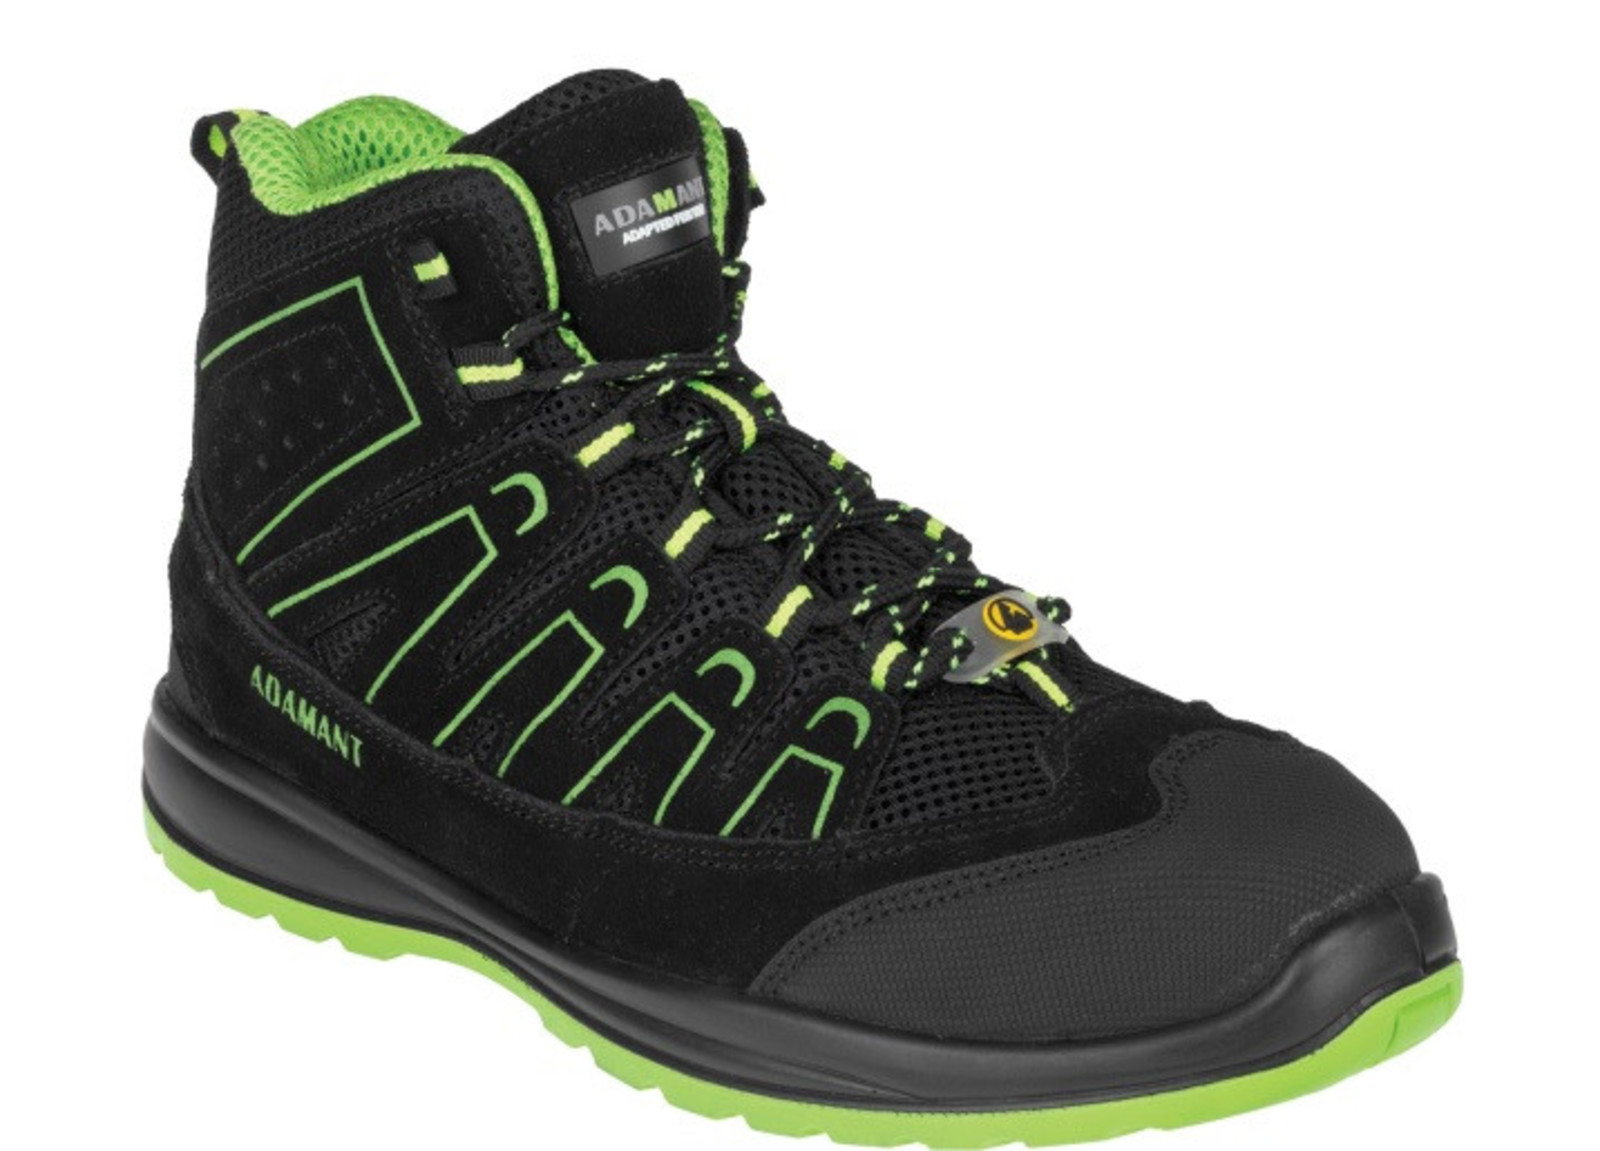 Bezpečnostná obuv Adamant Alegro S1P ESD - veľkosť: 48, farba: čierna/zelená